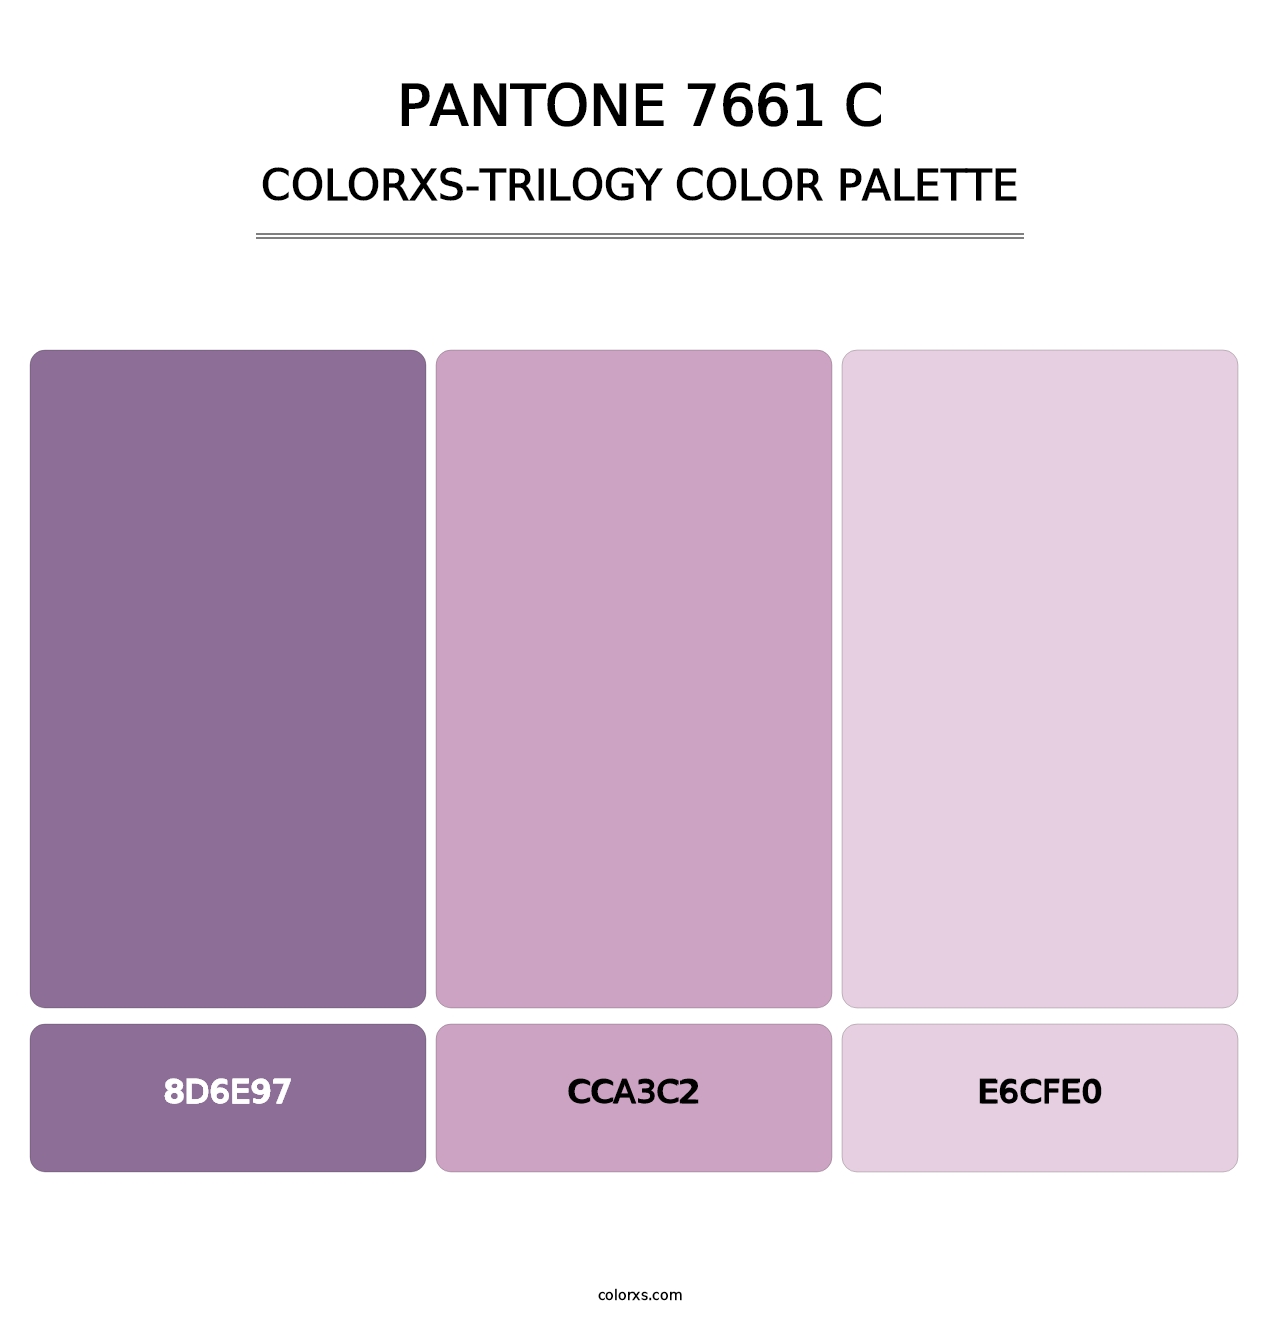 PANTONE 7661 C - Colorxs Trilogy Palette